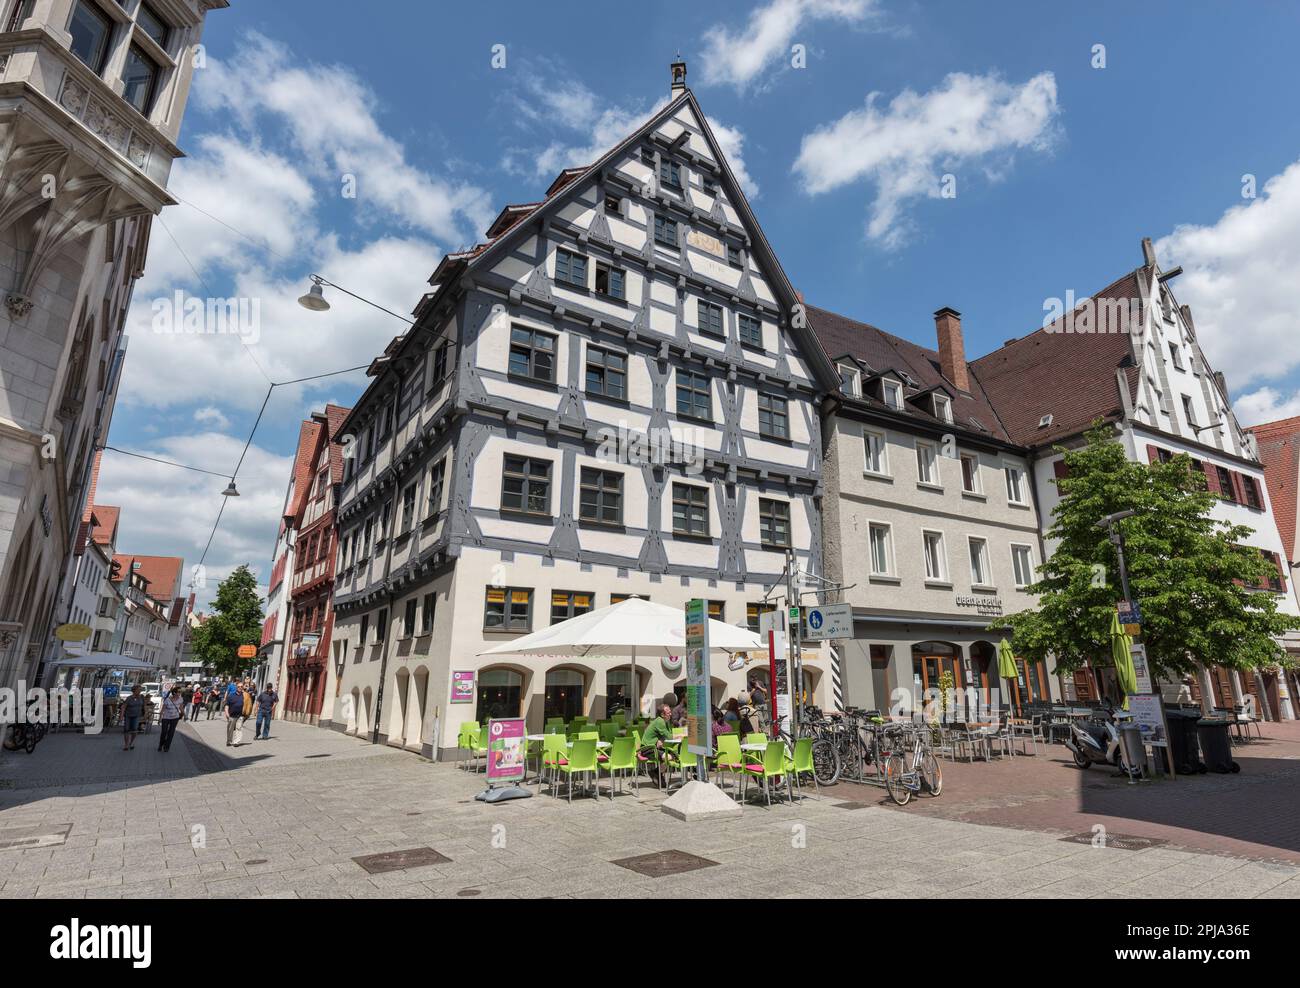 Casa residencial histórica de entramado de madera del siglo XV / XVIII y café en Hafengasse, casco antiguo, Altstadt, Ulm. Foto de stock